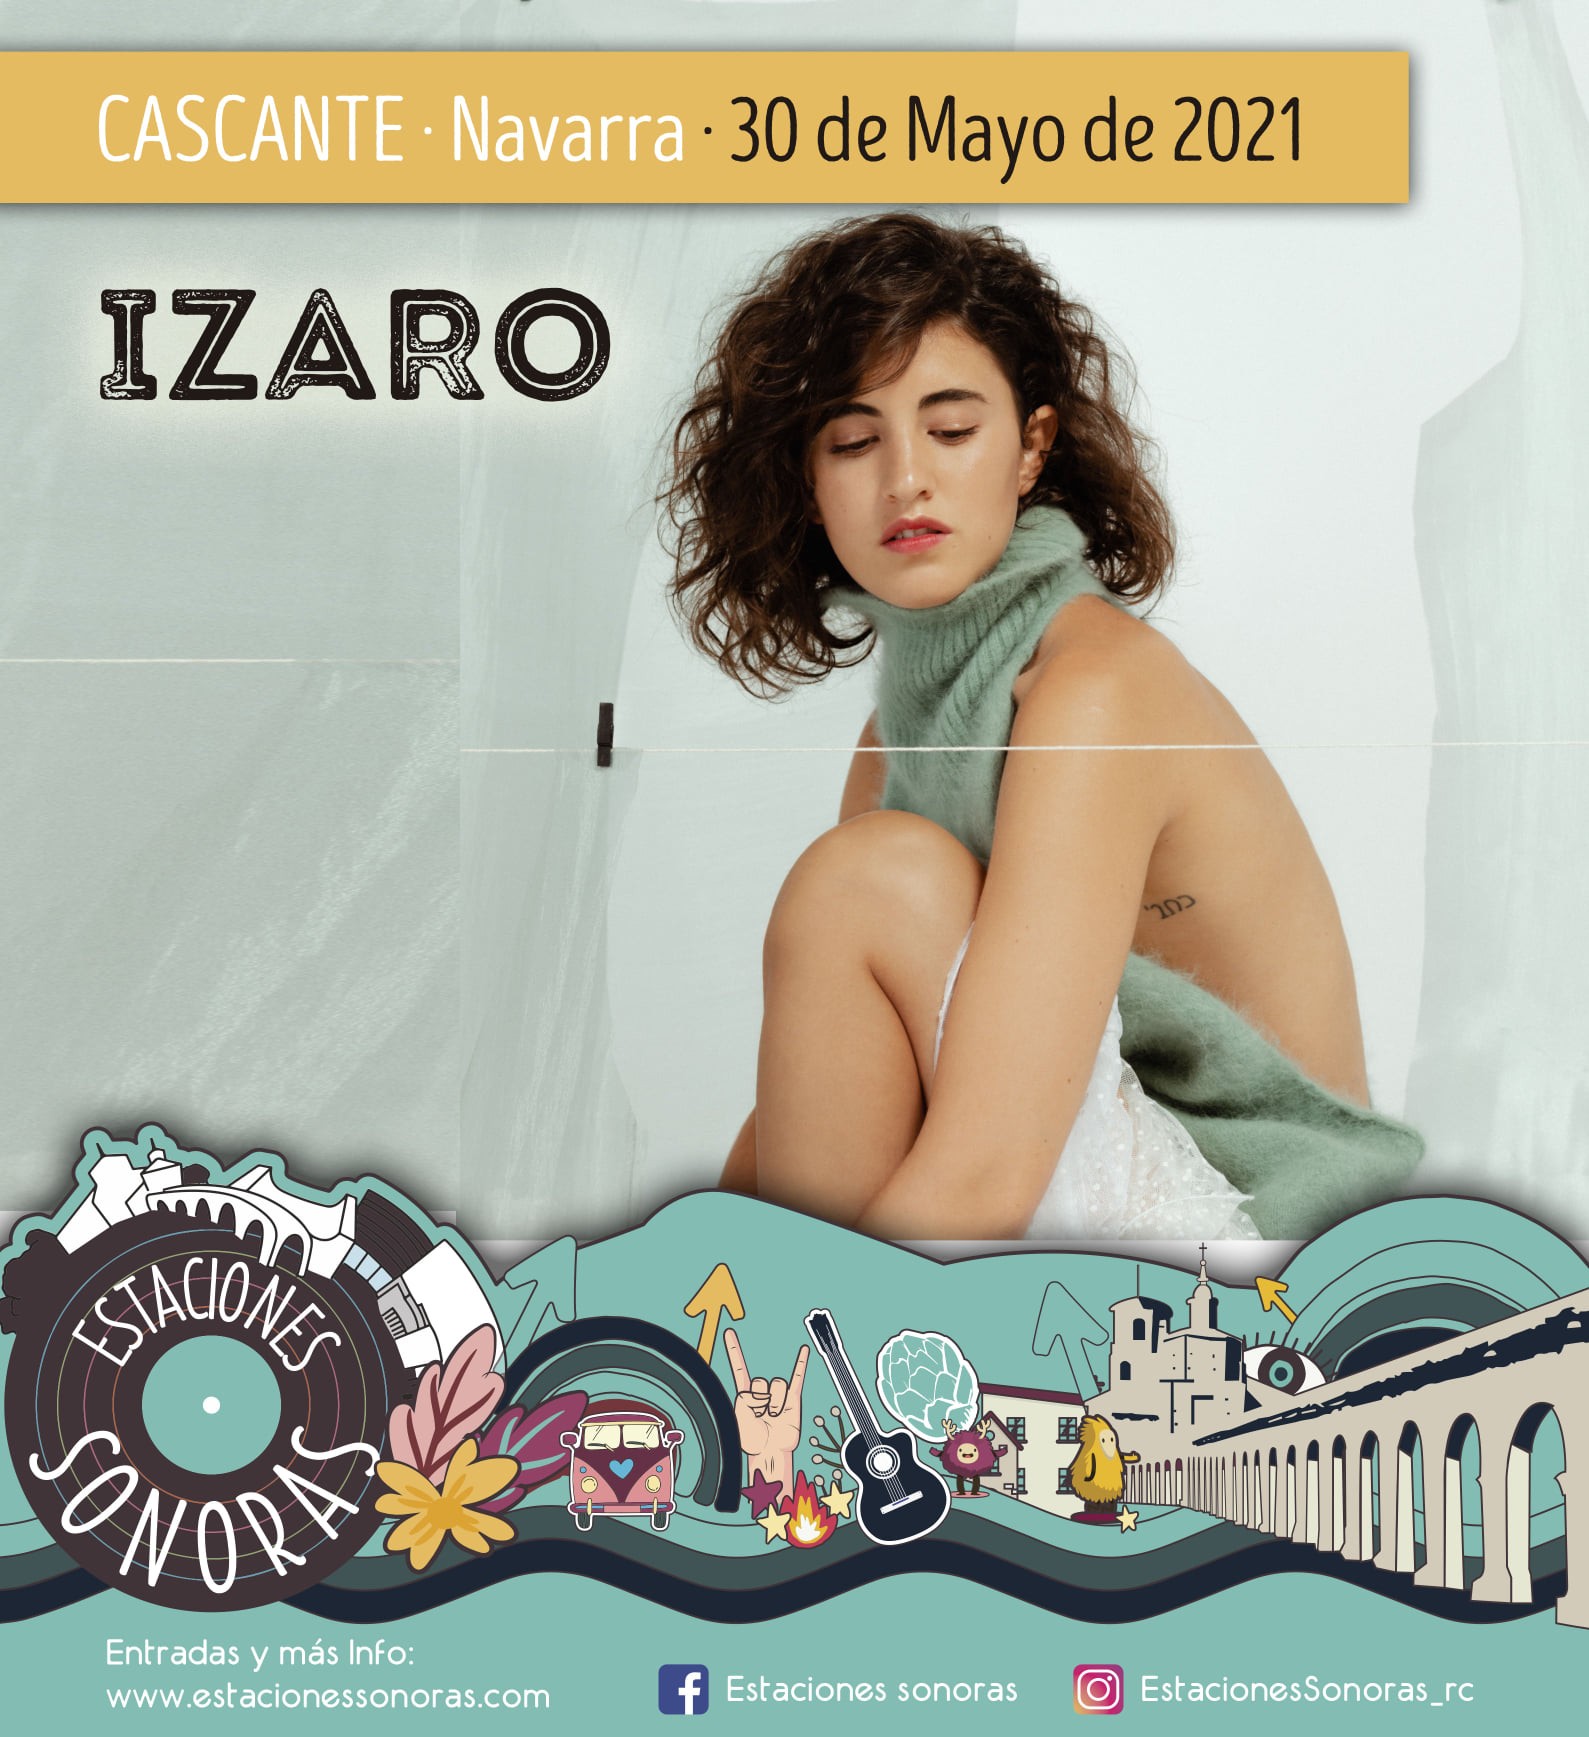 Festival Estaciones sonoras primavera Cascante Navarra actividades culturales musica y conciertos